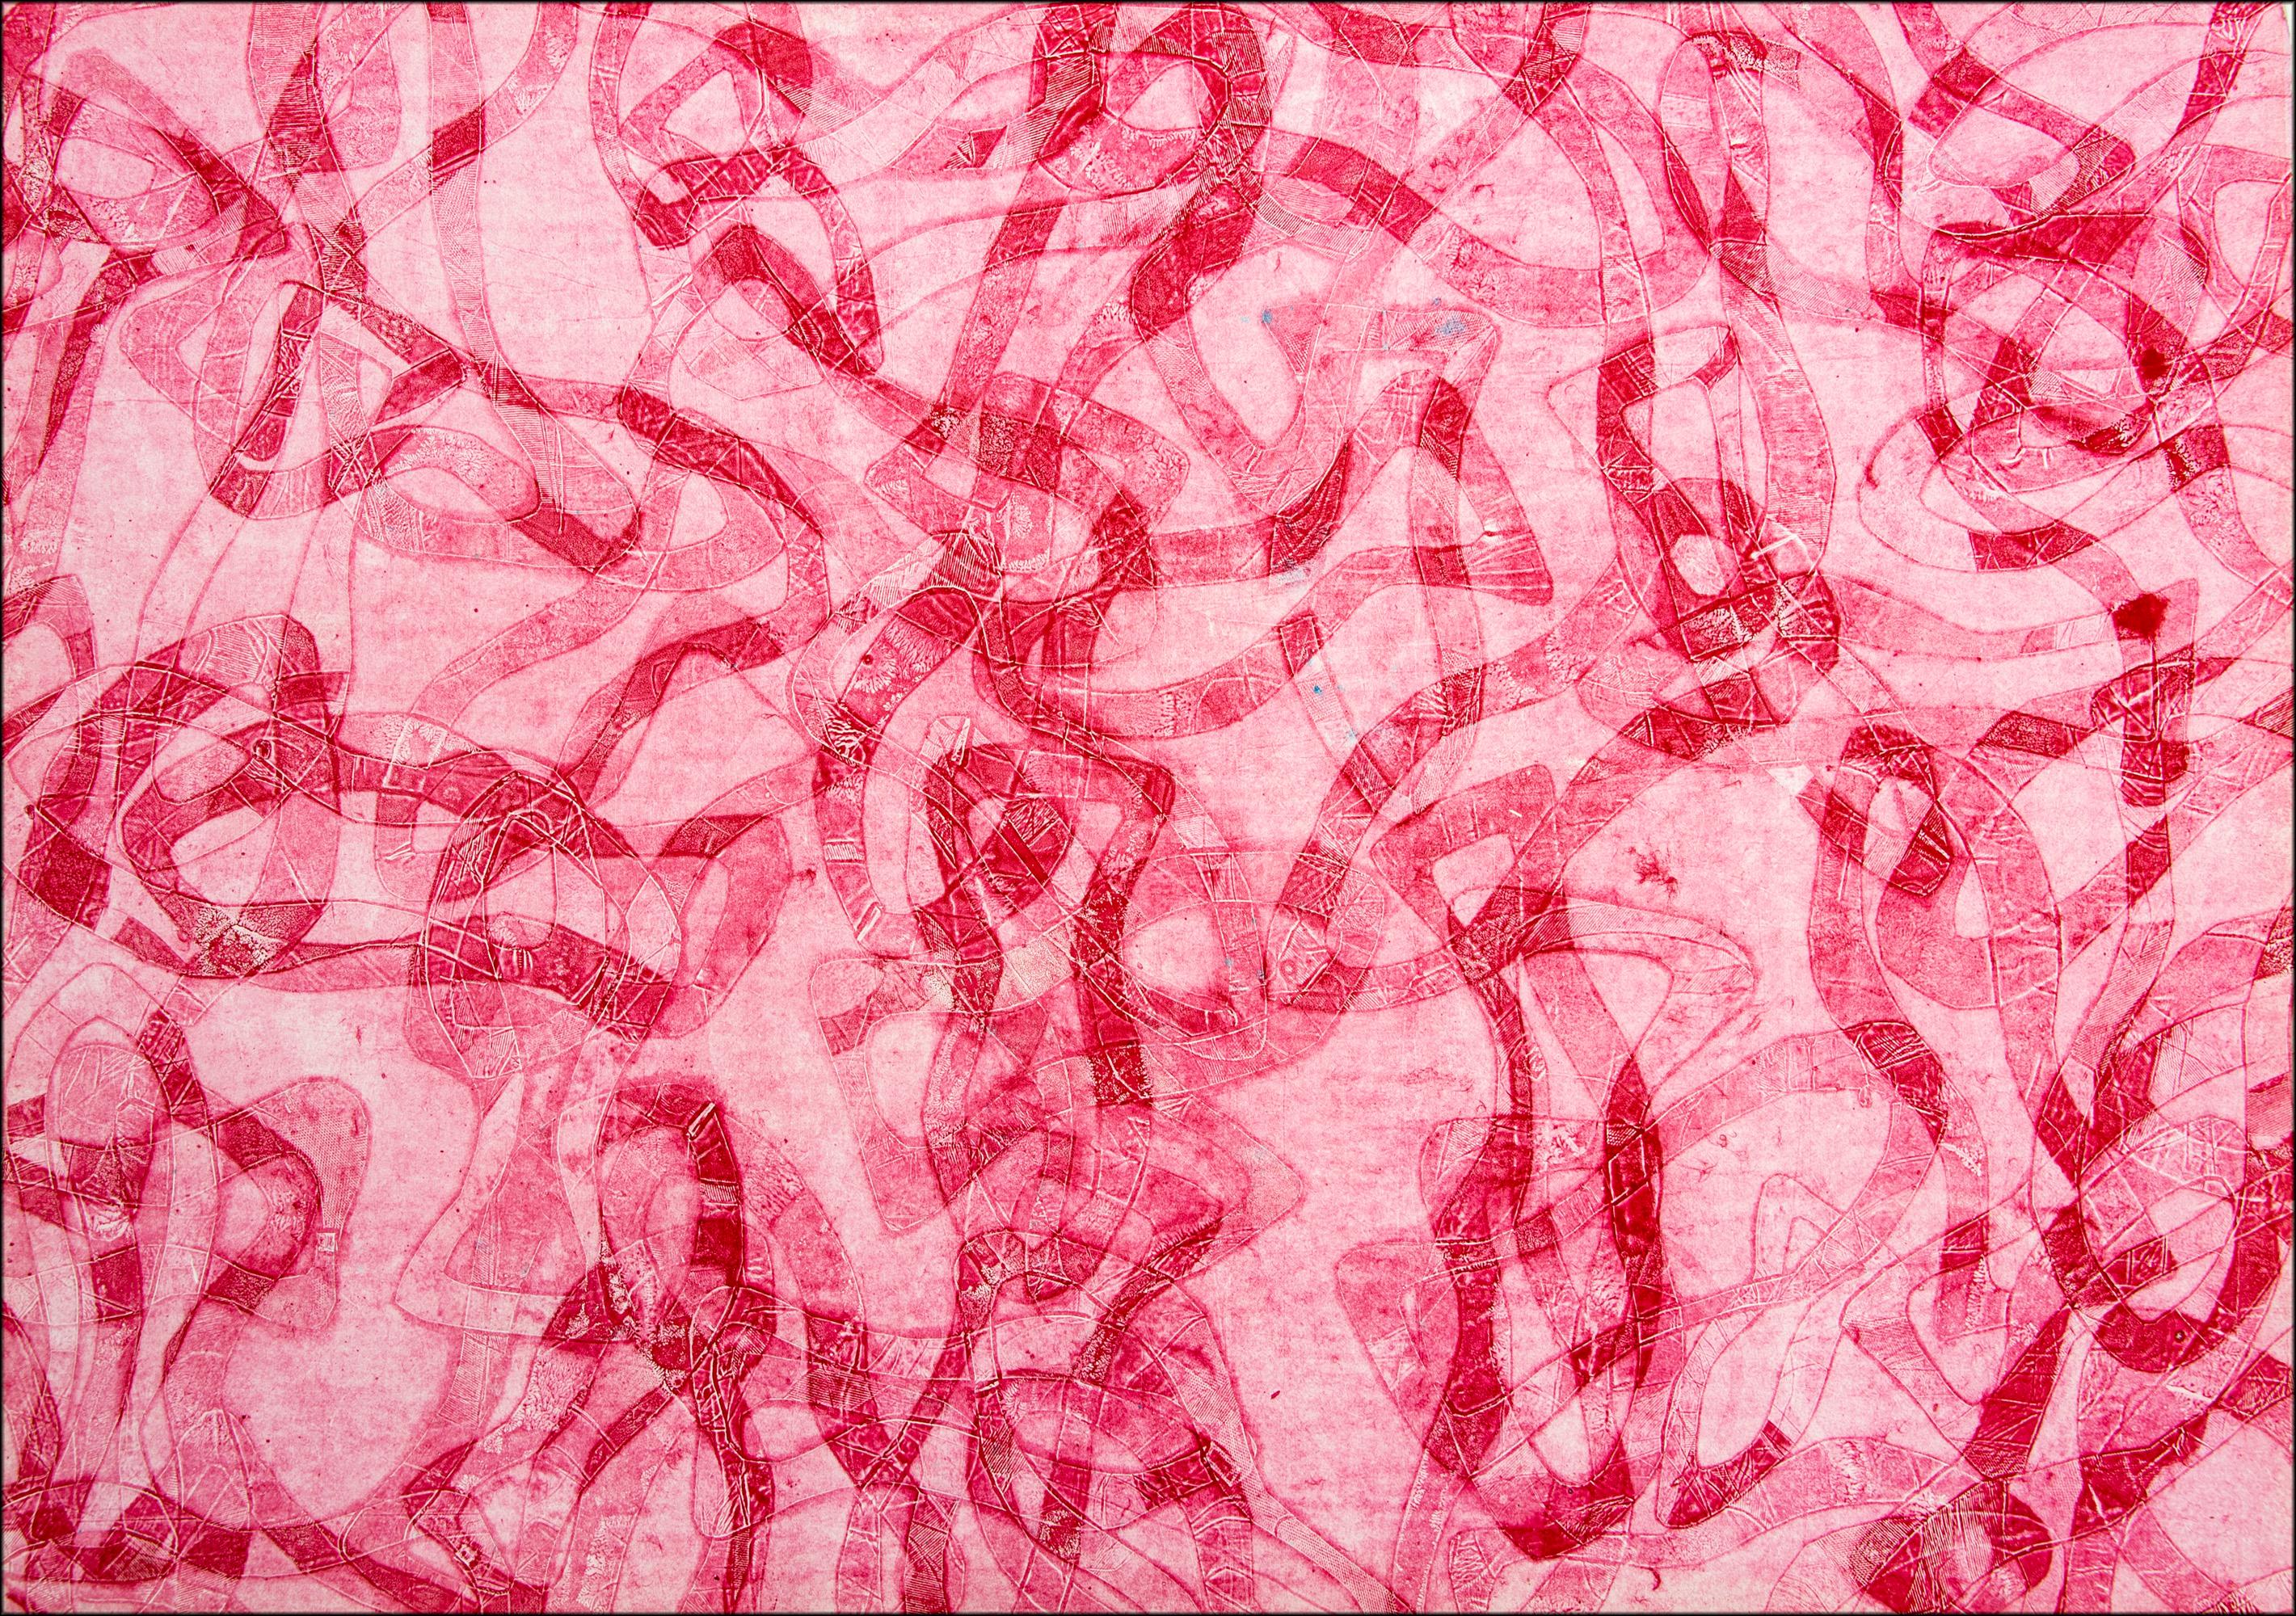 Animal Painting Enric Servera - Tonalité rouge, peinture figurative abstraite représentant des poissons des mers rouges sur papier 